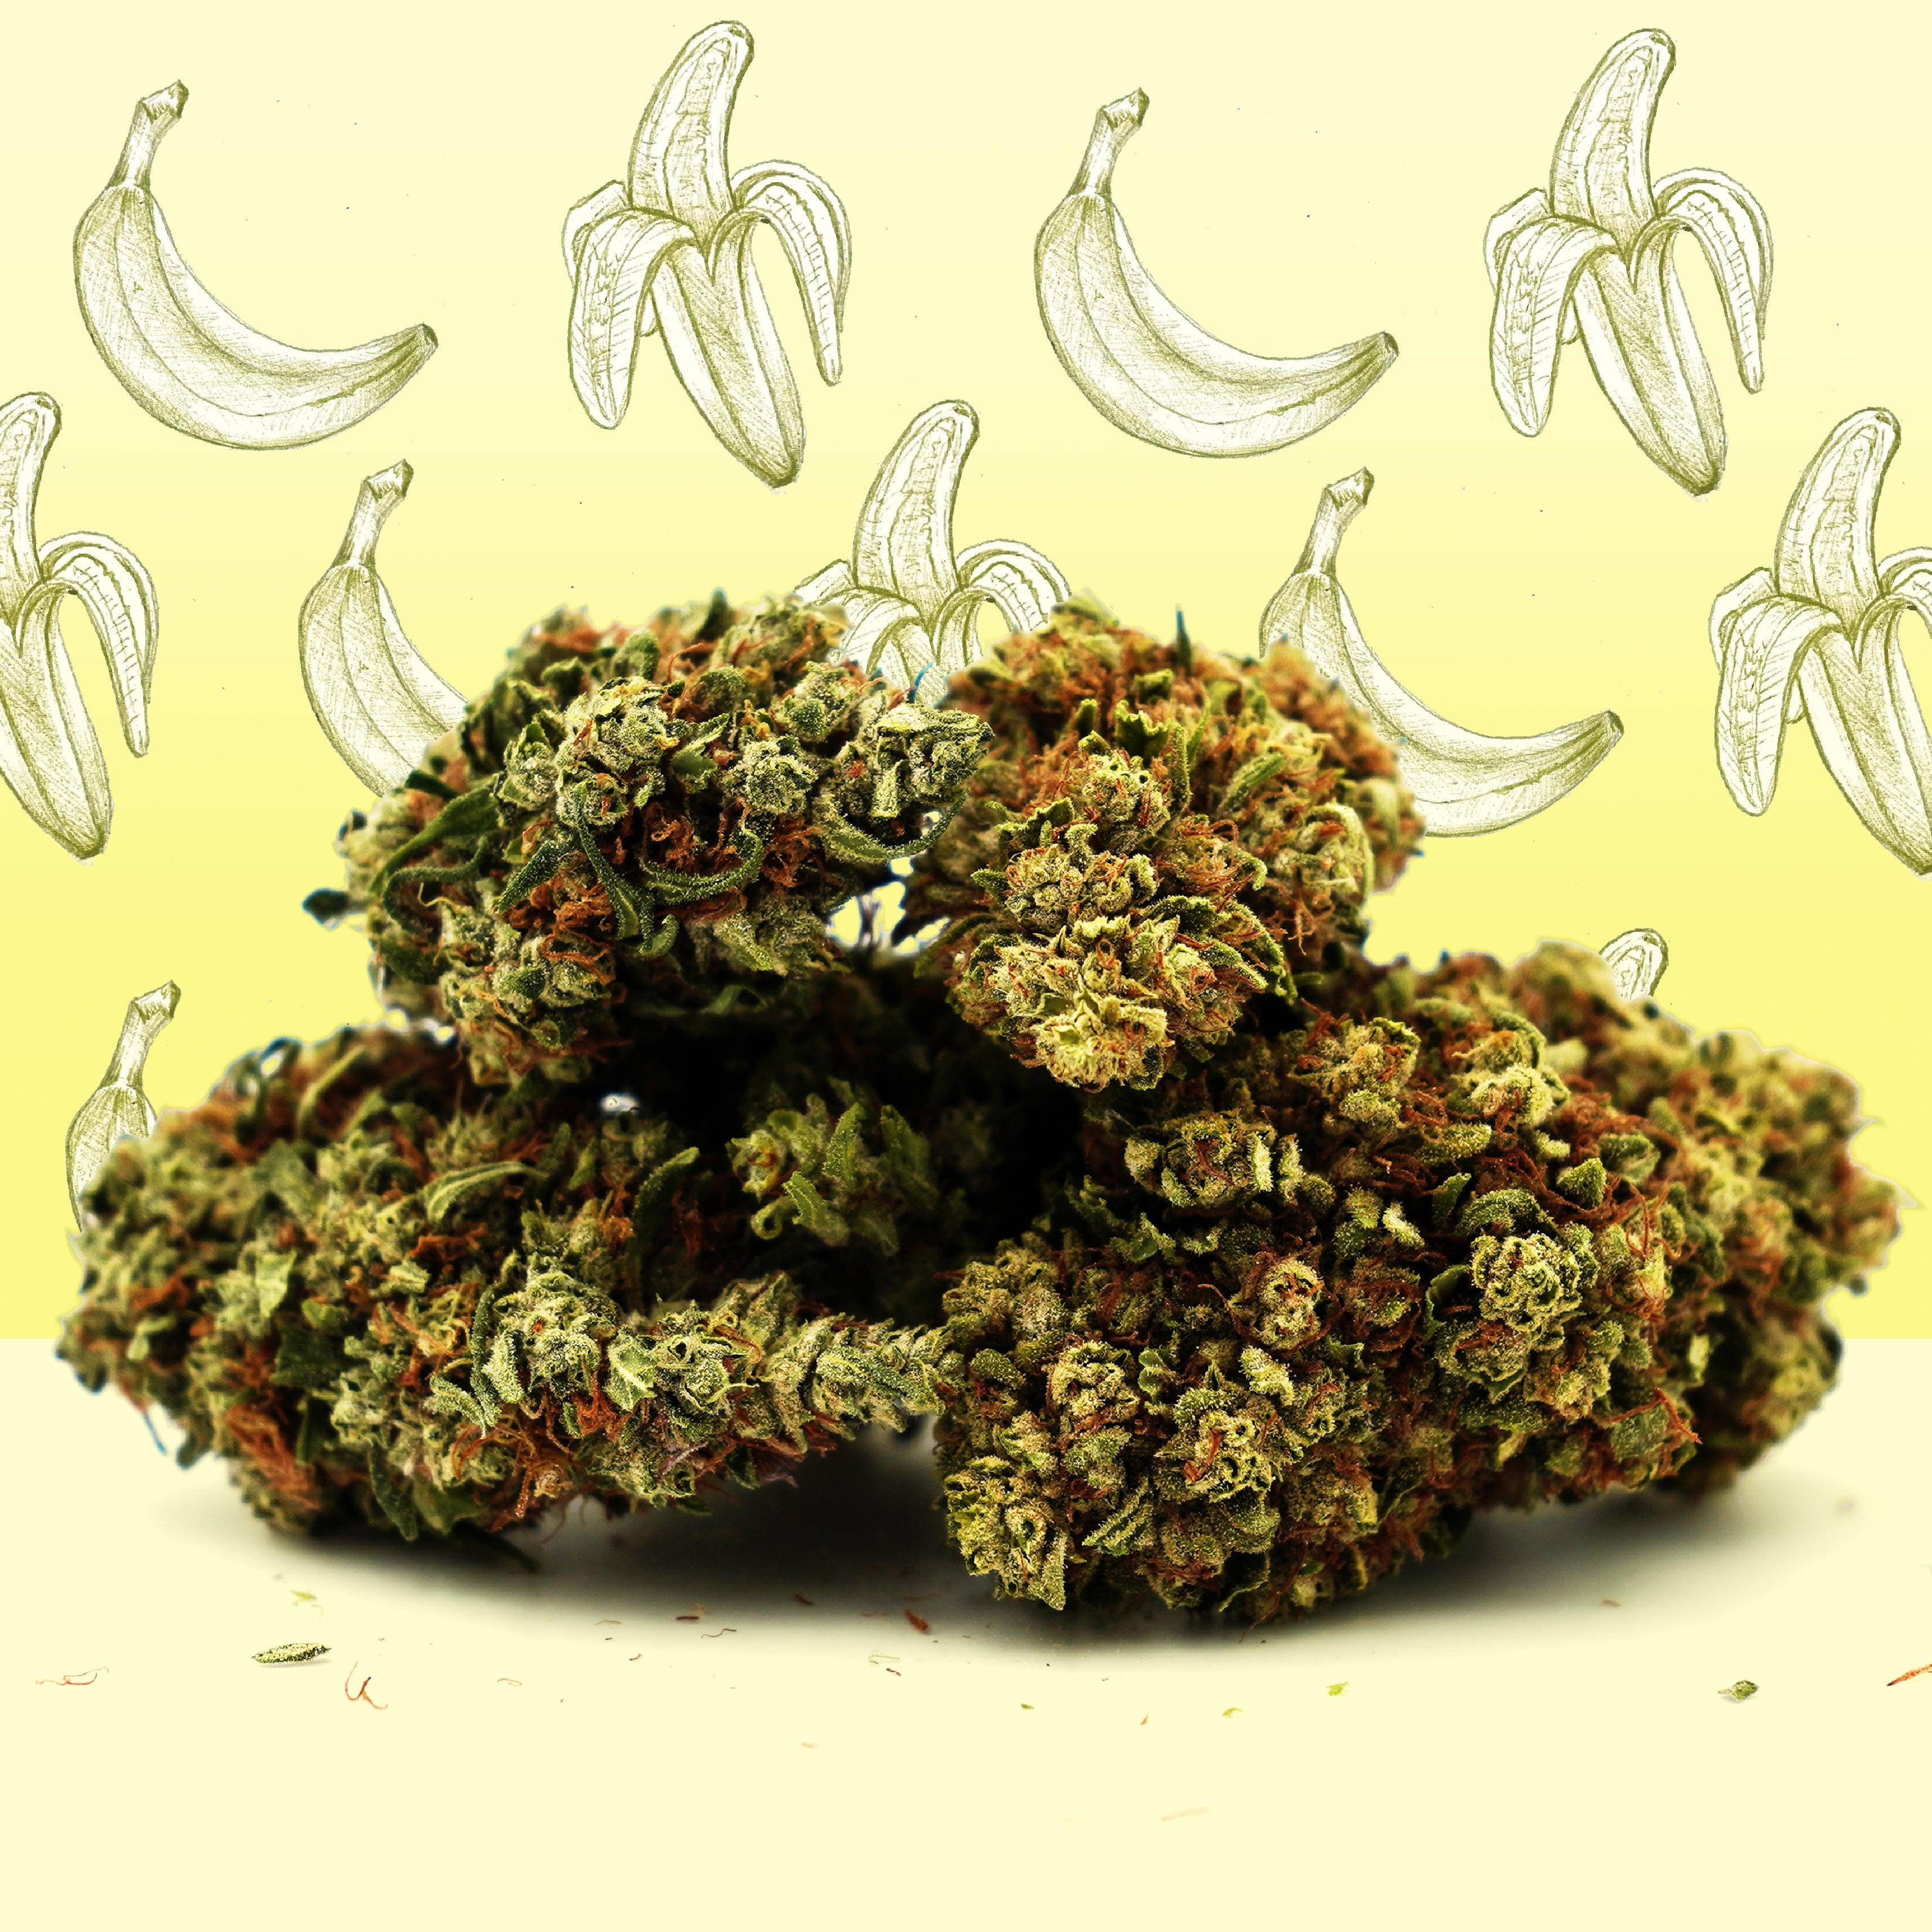 Fleurs de Chanvre CBG – Banana Cream cultivée sous-serre (Greenhouse) La Banana Cream est la nouvelle variété de fleurs CBG de chez Mama Kana. Elle sedémarque par la douceur de ses arômes, crémeux, qui tirent subtilement vers le fruité, mais également par son taux très élevé de 12% de CBG. Les têtes charnues, volumineuses et aériennes, sont idéales pour profiter au mieux du potentiel et des arômes de la fleur. Spécialement sélectionnée par nos soins, cette variété de fleur CBG a bénéficié d’une attention toute particulière à tous les stades de sa culture et compte parmi les plus savoureuses et riches en cannabinoïdes du marché français. Faites-nous part de votre retour en commentaire sur notre groupe Facebook France CBD - Mama Kana !